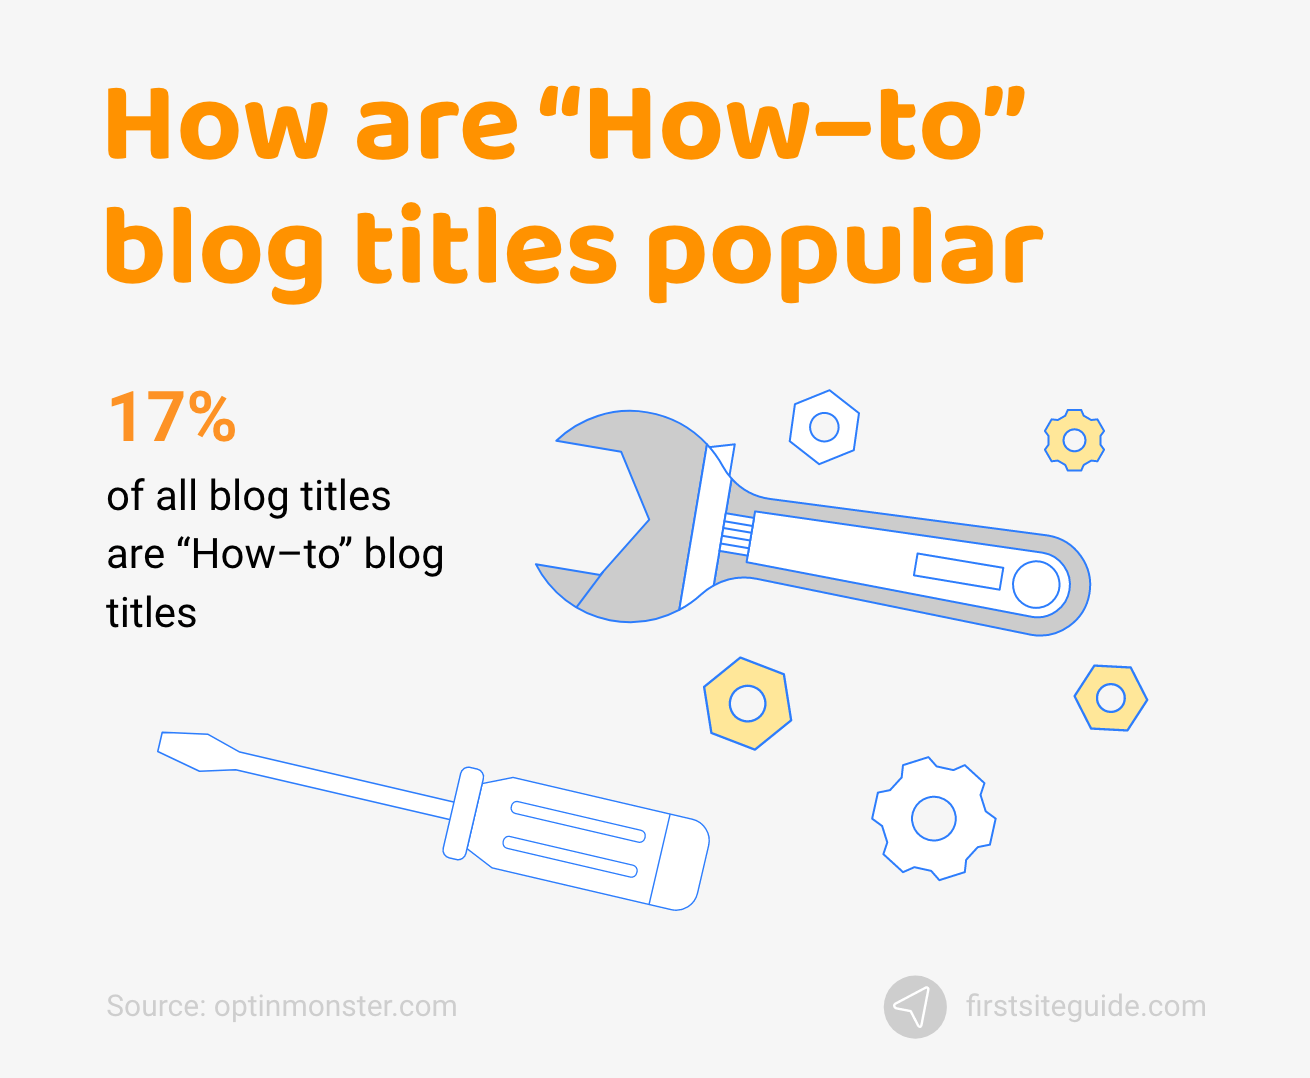 ¿Cómo son populares los títulos de blogs de "Cómo hacer"?